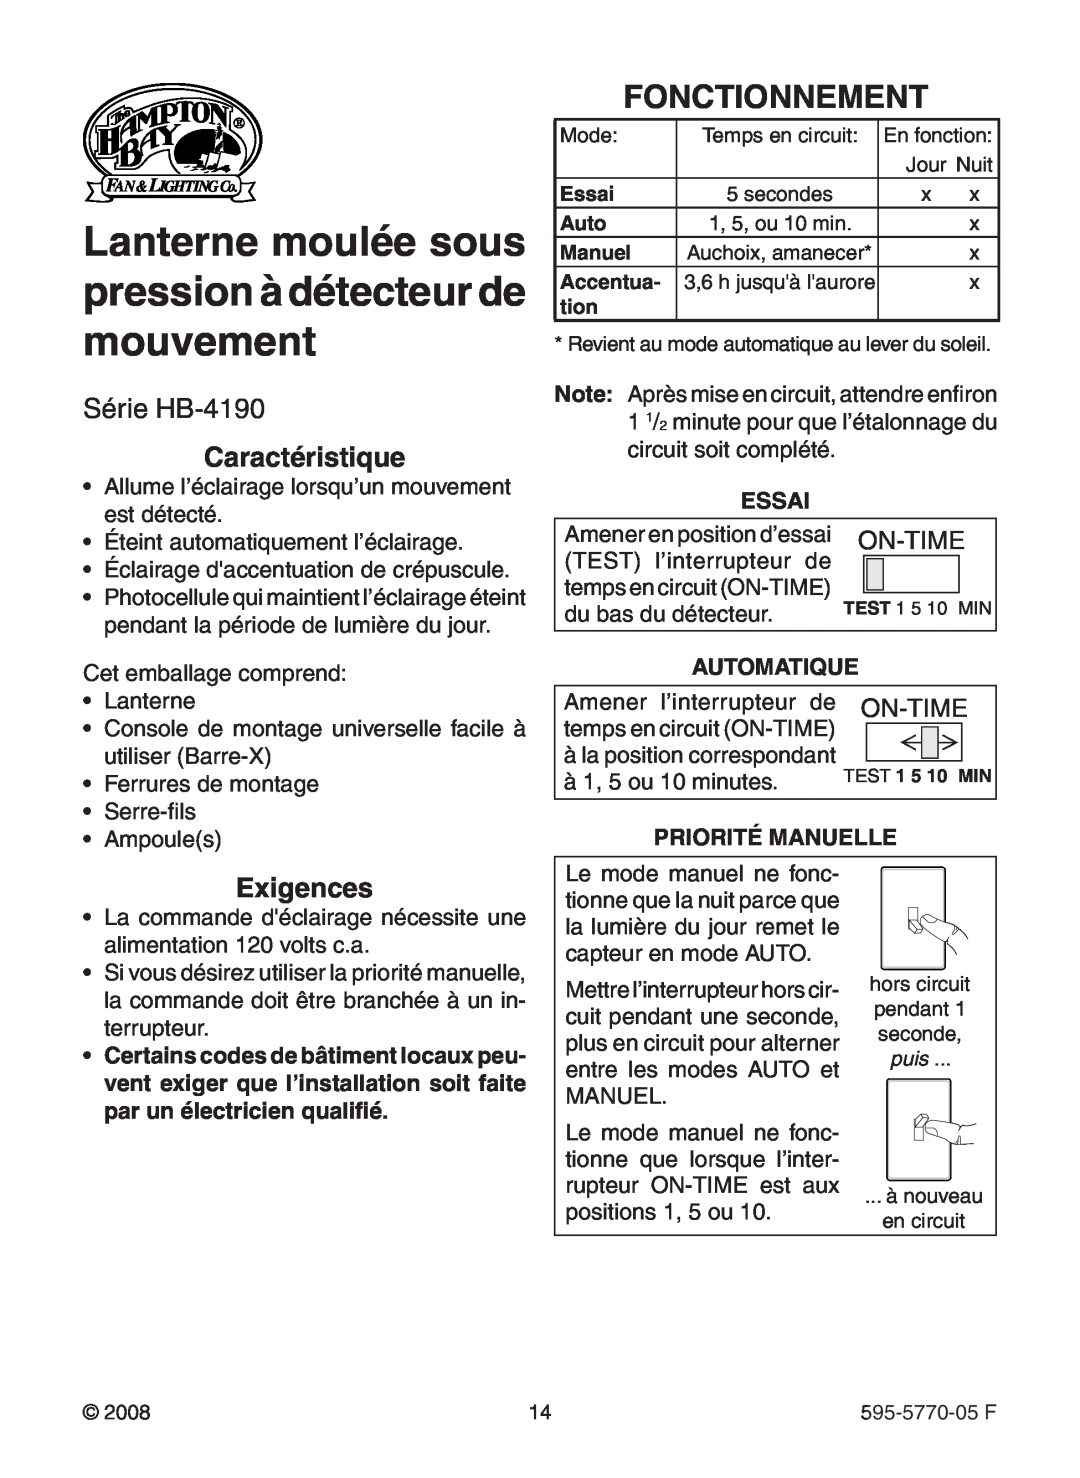 Heath Zenith HB-4190 Series manual Fonctionnement, Série HB-4190, Caractéristique, Exigences, Essai, Automatique, On-Time 